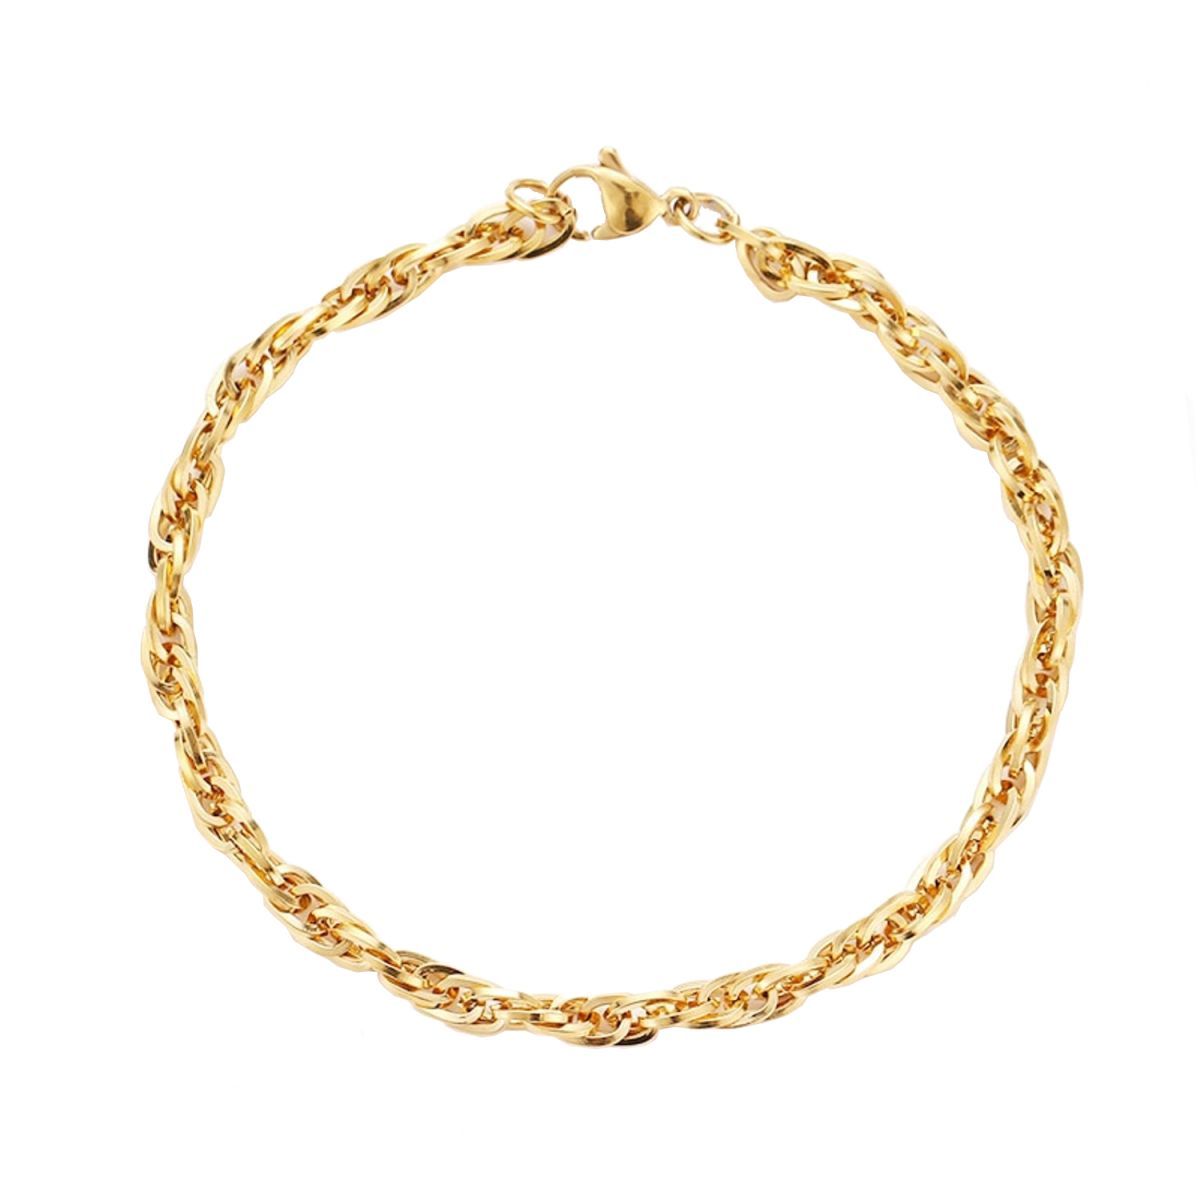 Triple Links Korean 18K Gold Placed Links Chain Bracelet For Men